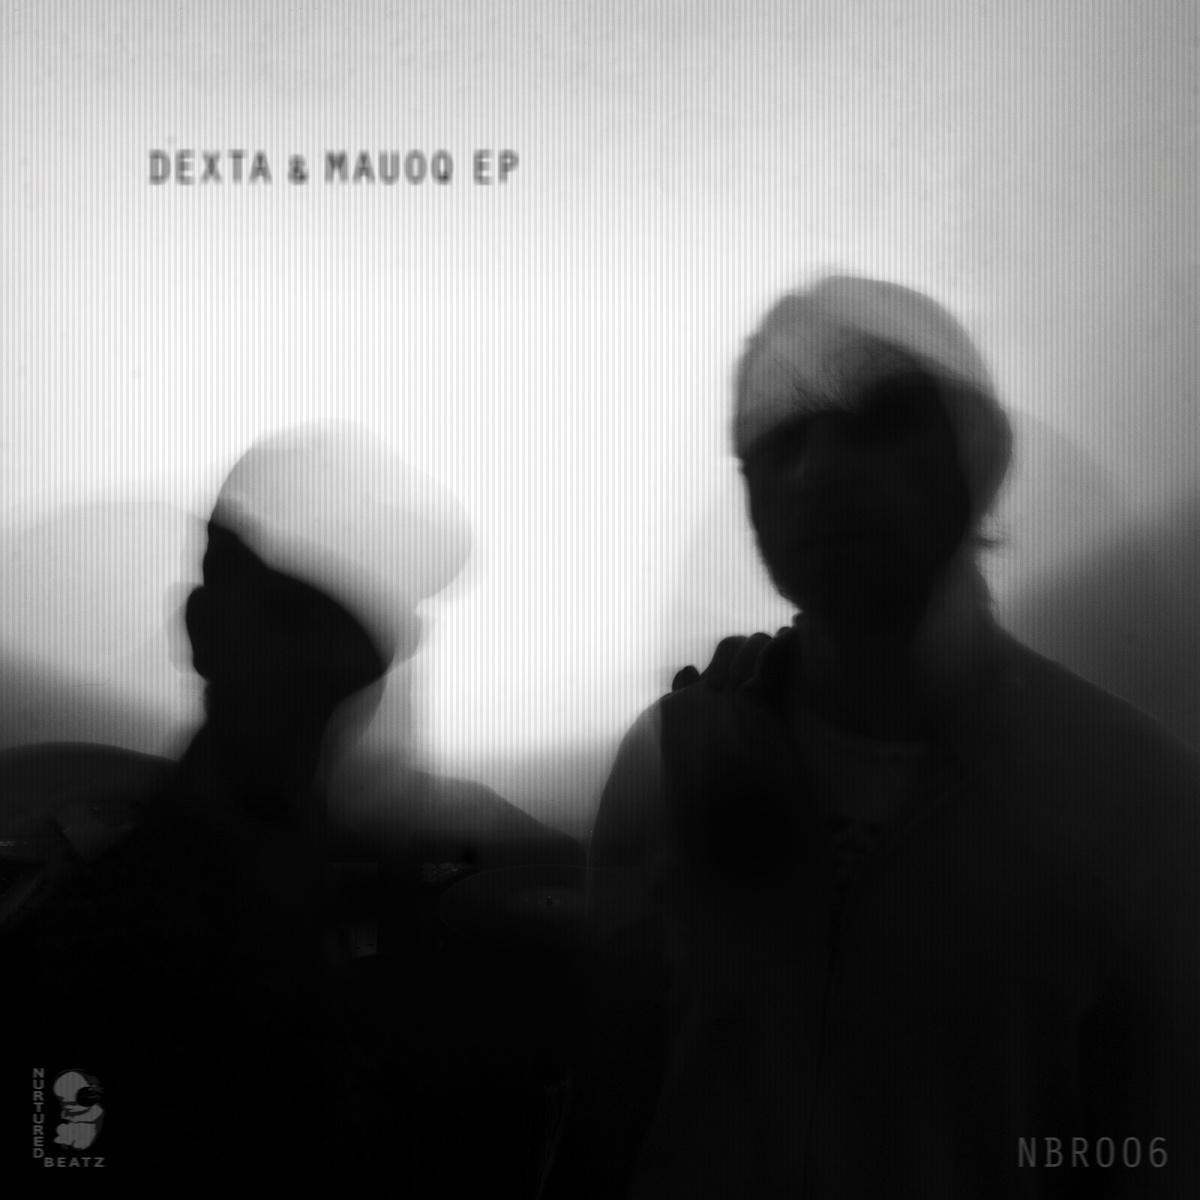 Dexta & Mauoq – Dexta & Mauoq EP